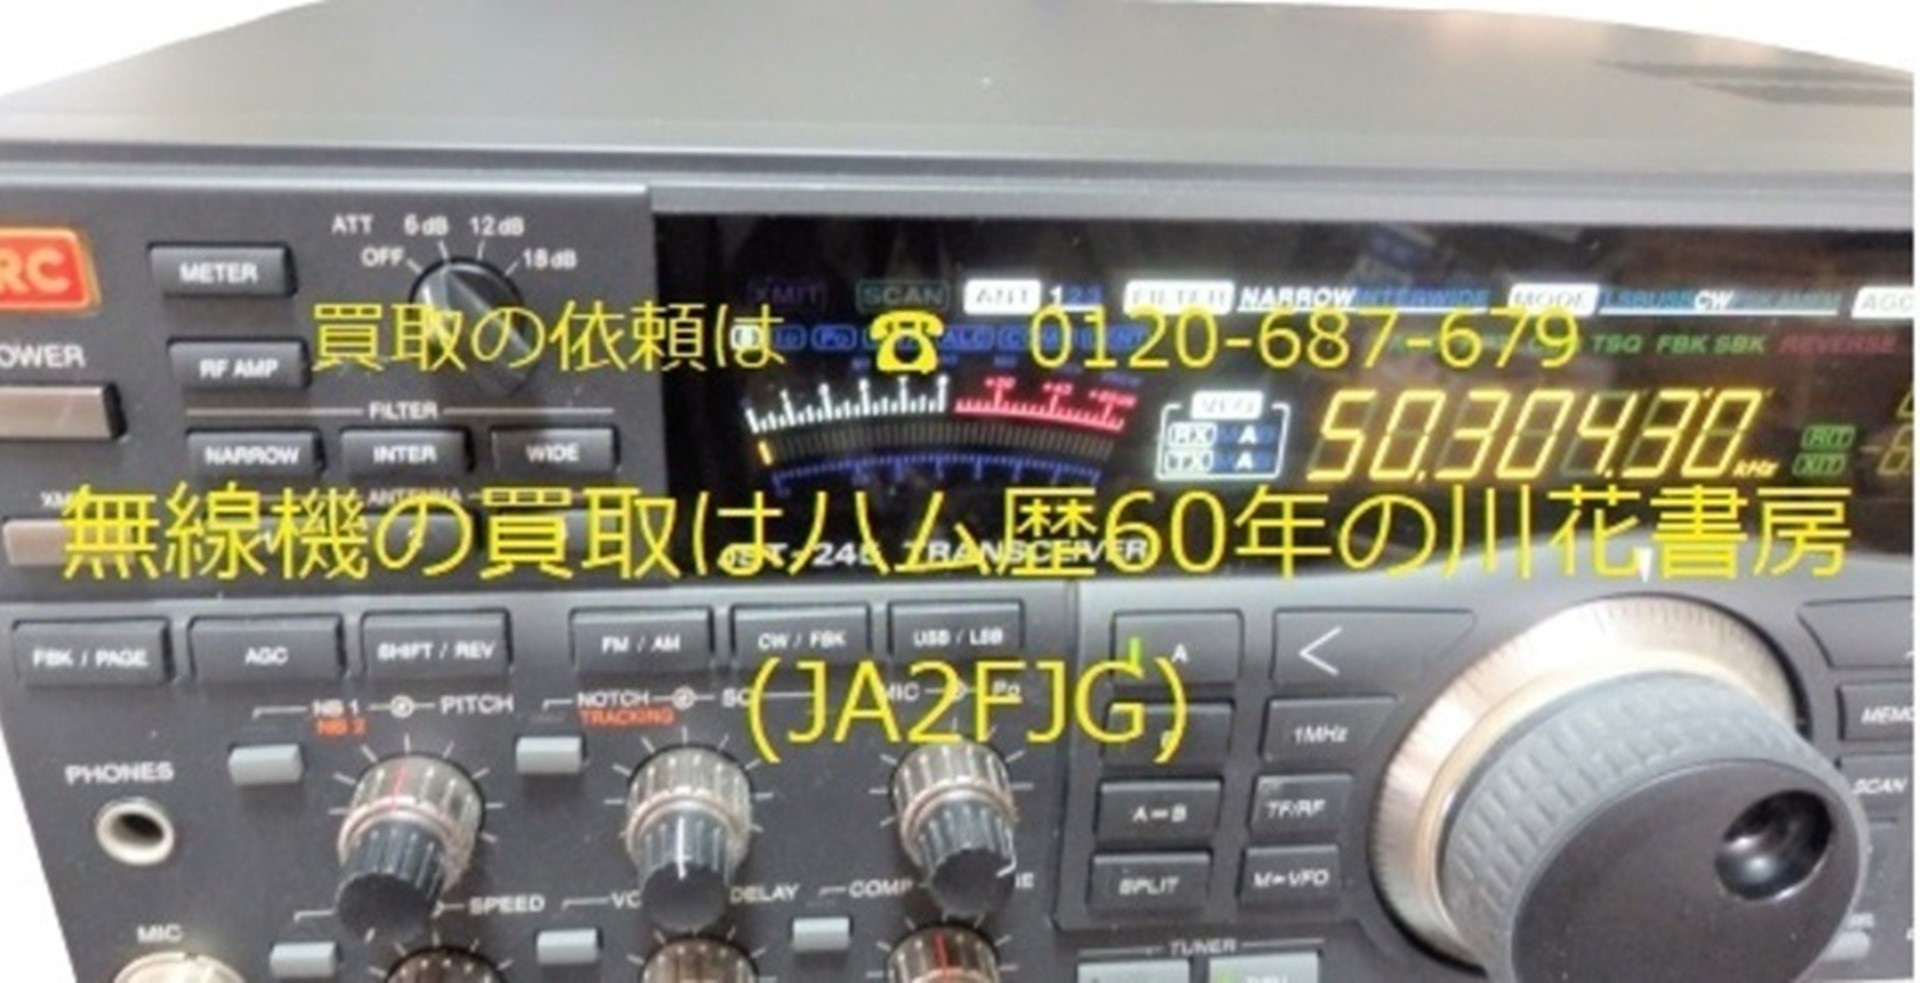 無線機の買取はハム歴58年の川花書房(JA2FJG)